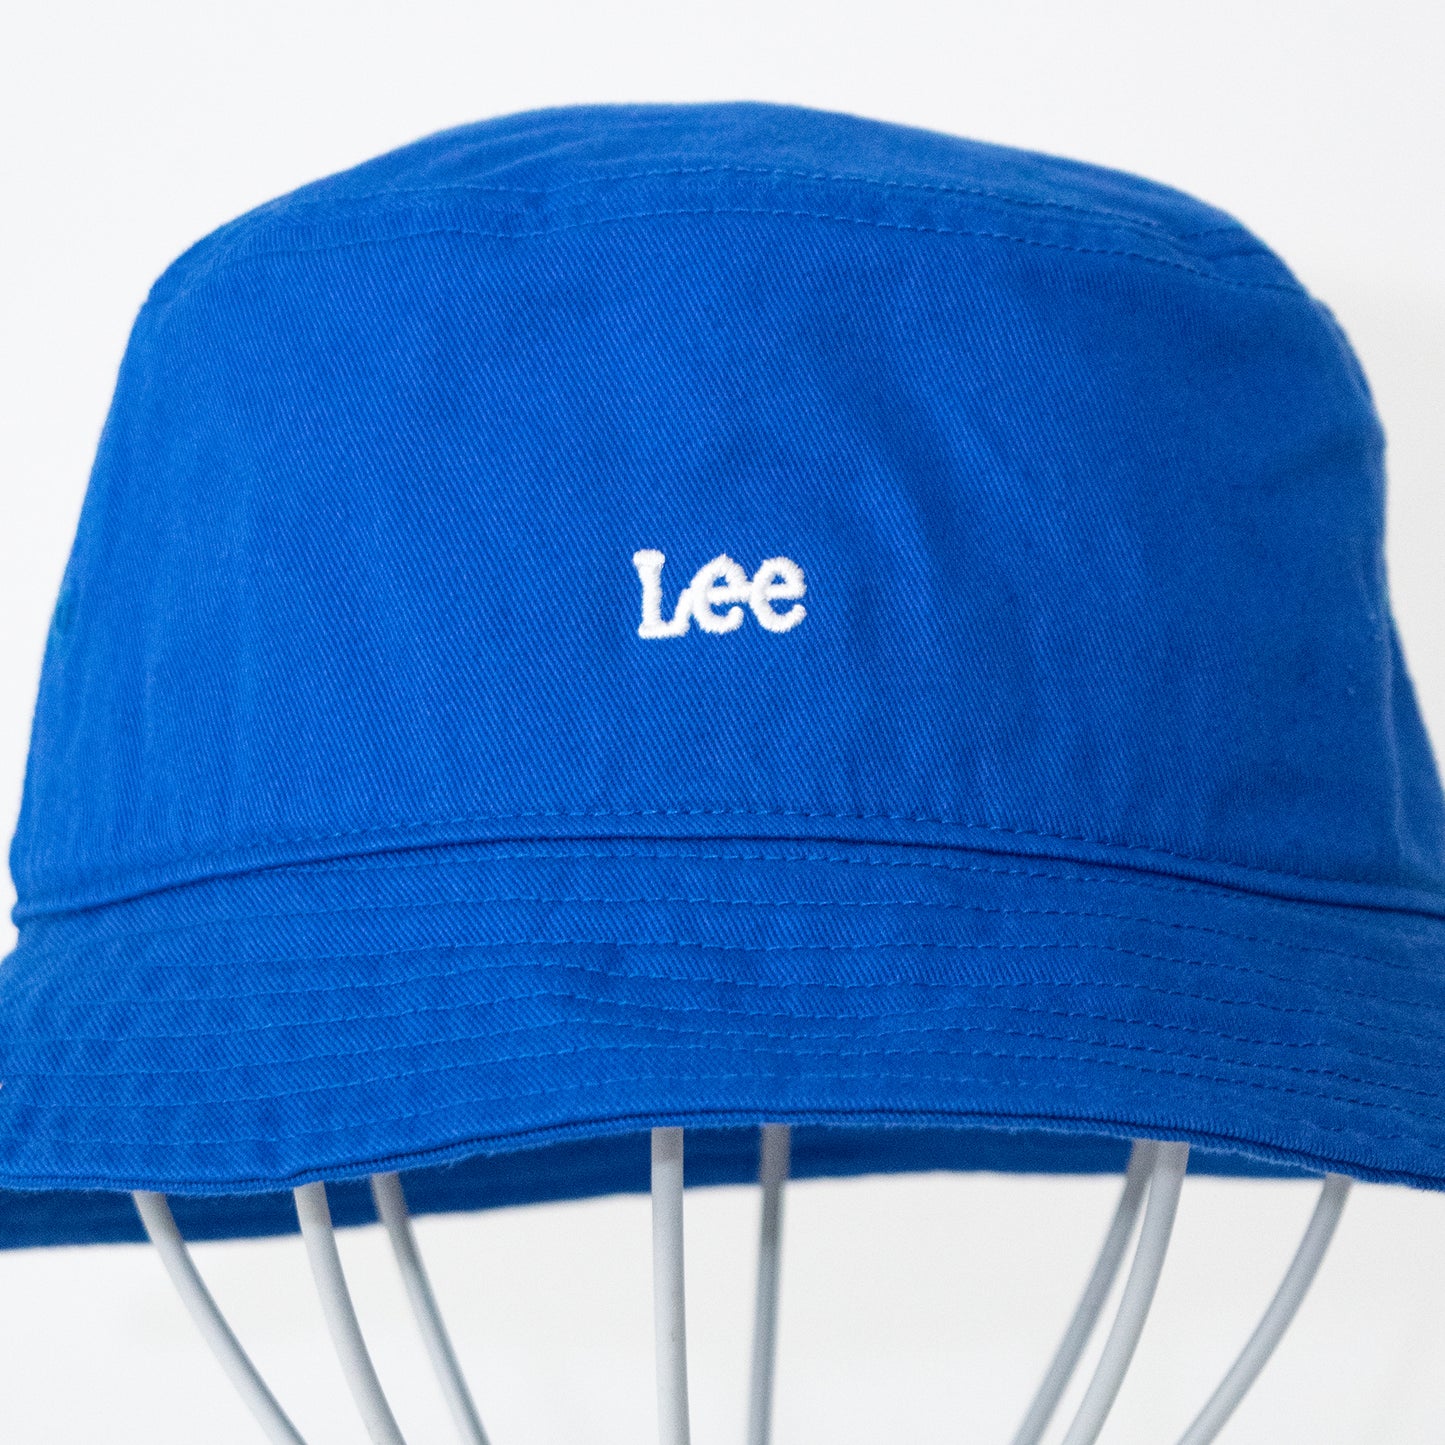 Lee ロゴ刺繍 バケットハット BLUE